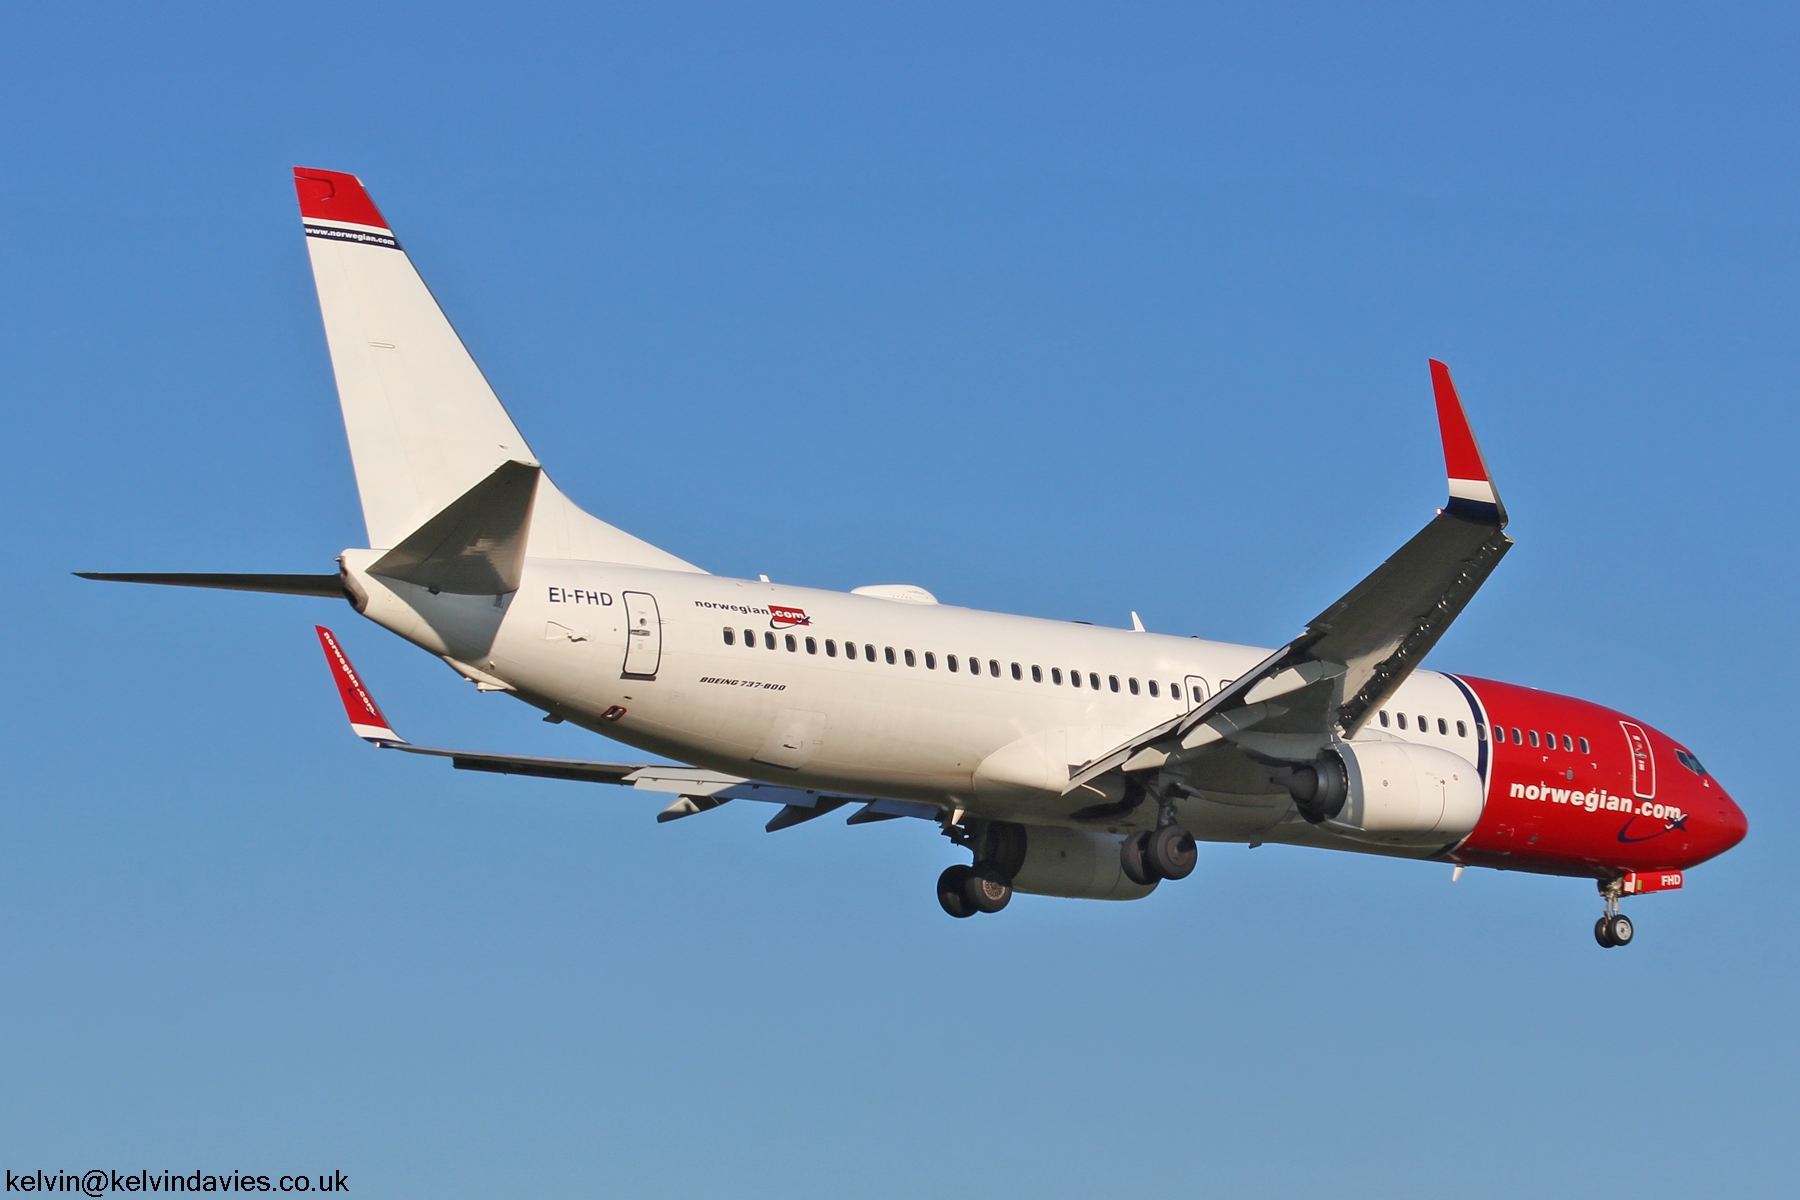 Norwegian 737 EI-FHD